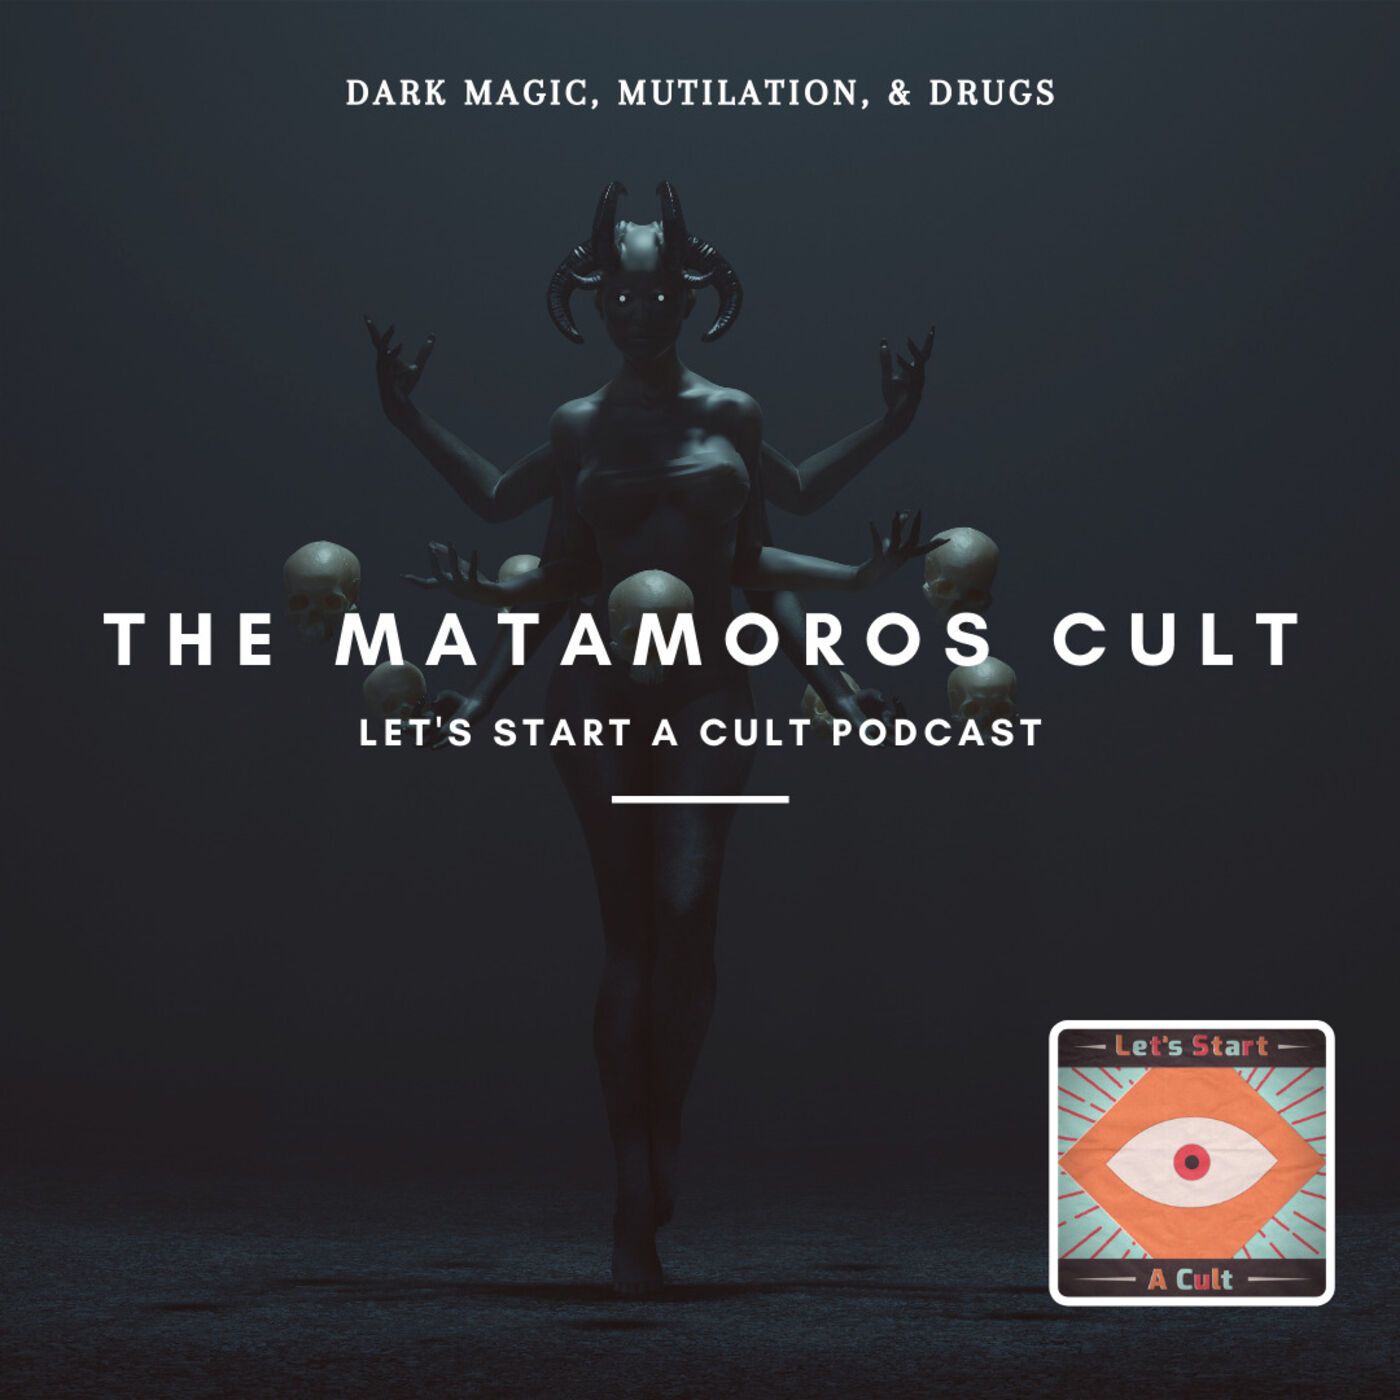 Artwork for podcast Let's Start A Cult